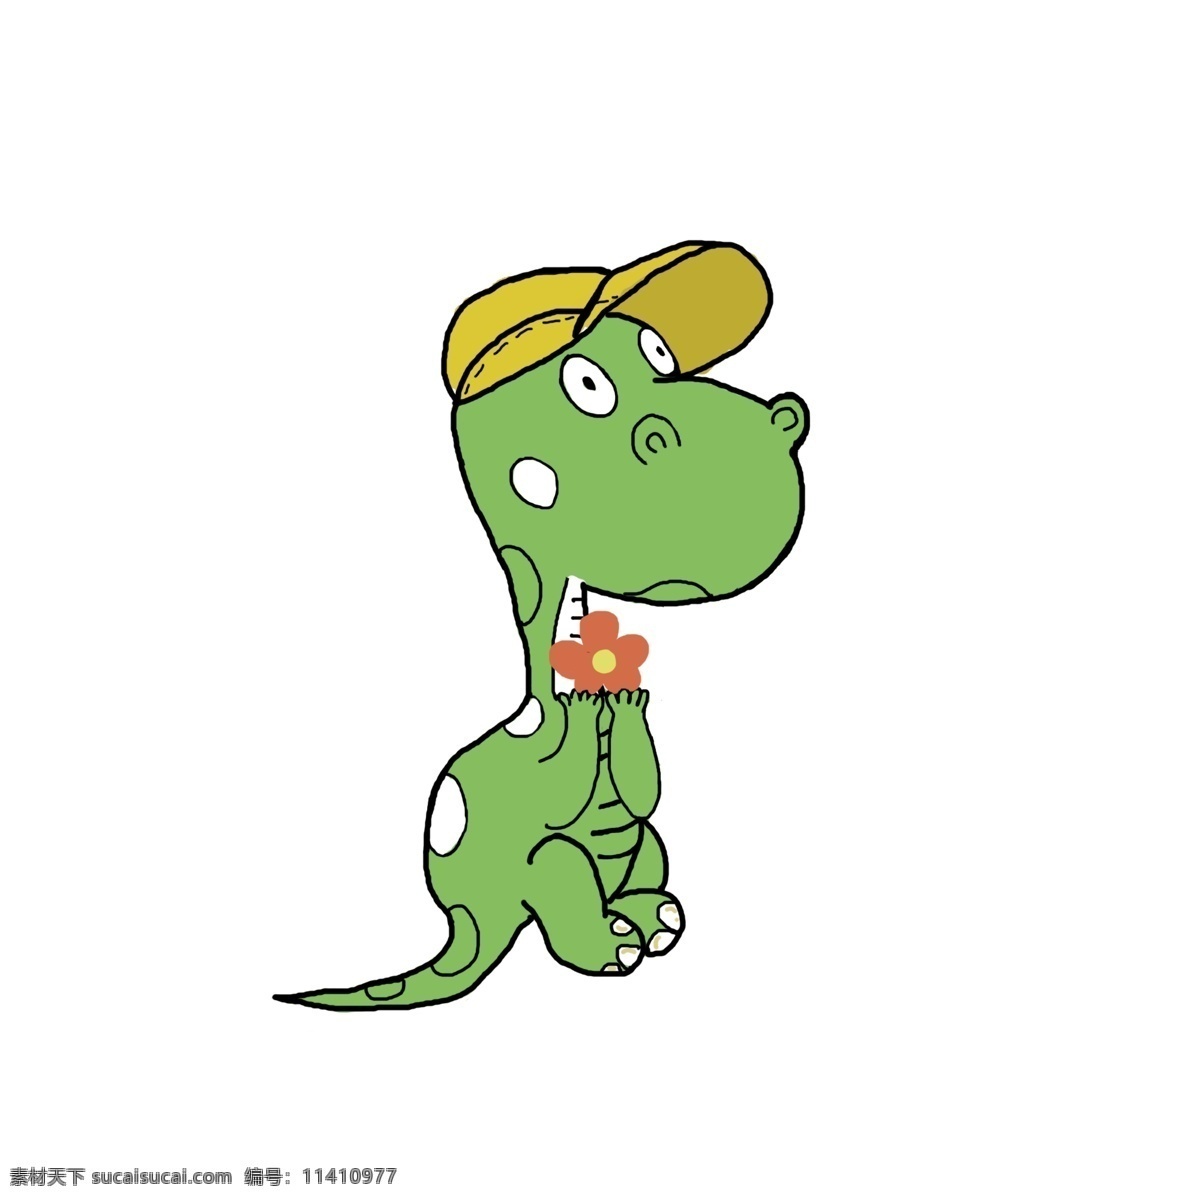 绿色 卡通 小 恐龙 卡通小恐龙 动物 可爱恐龙 手绘